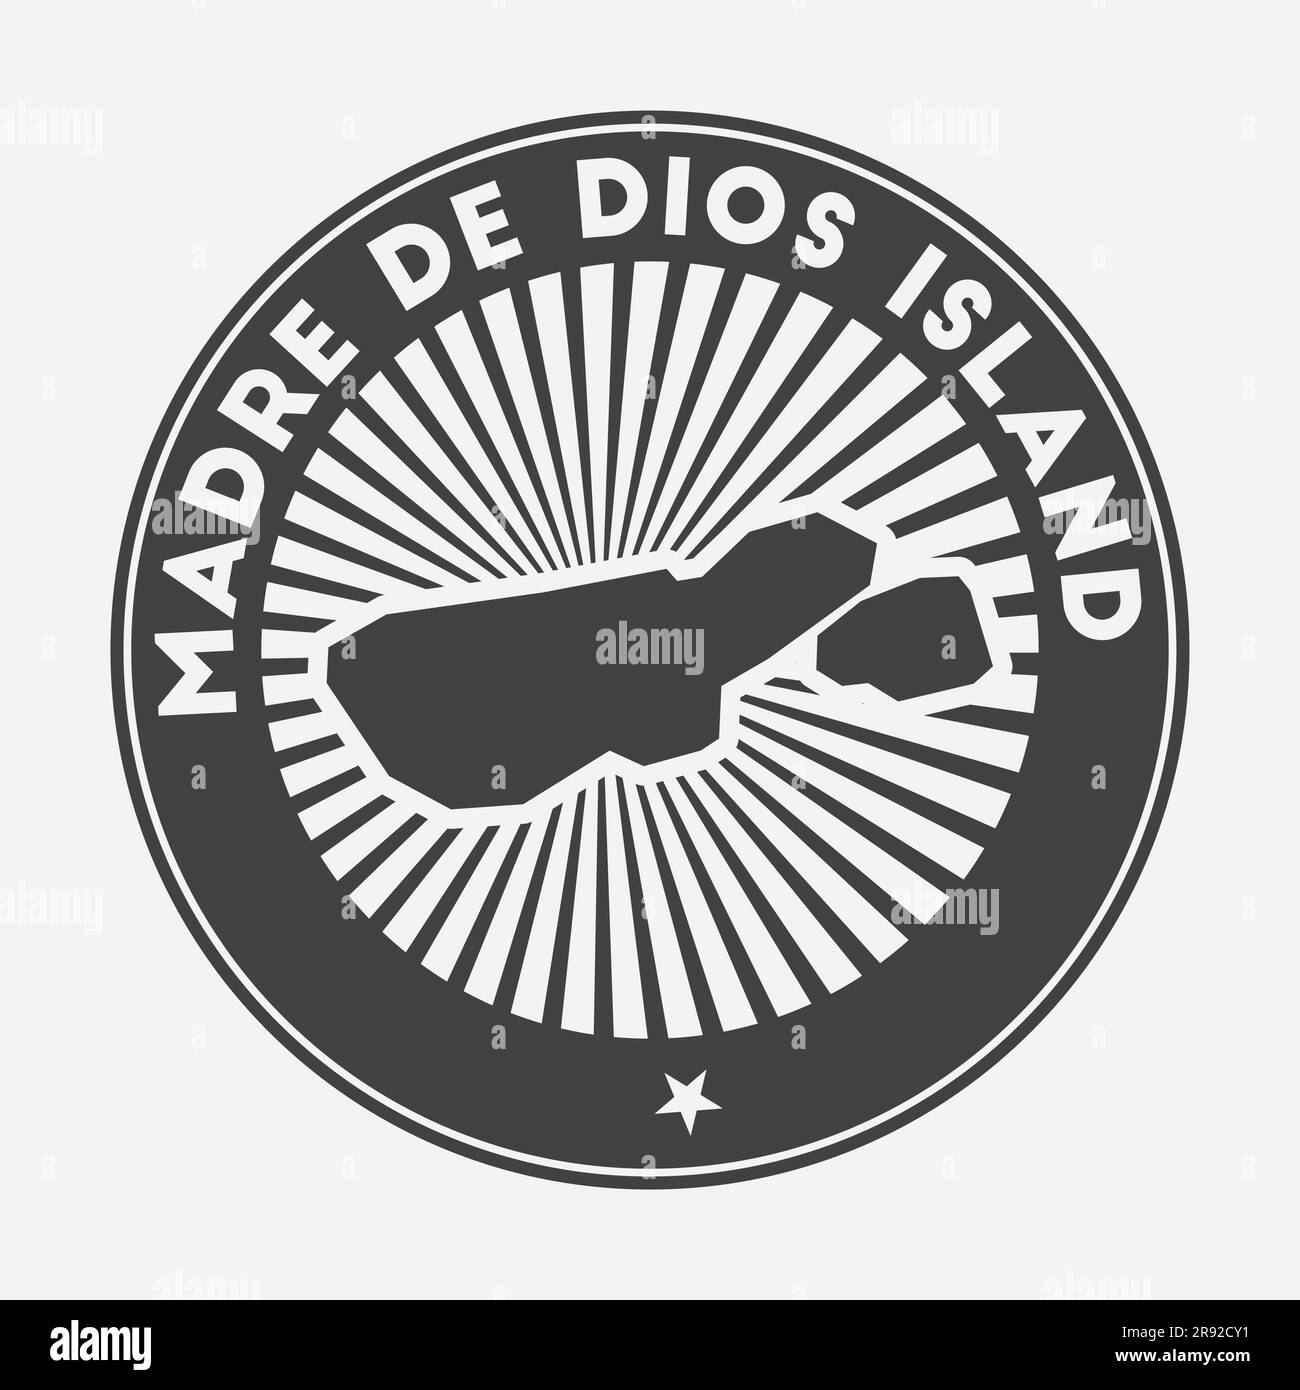 Logo rond de l'île Madre de Dios. Badge de voyage vintage avec le nom circulaire et la carte de l'île, illustration vectorielle. Illustration de Vecteur